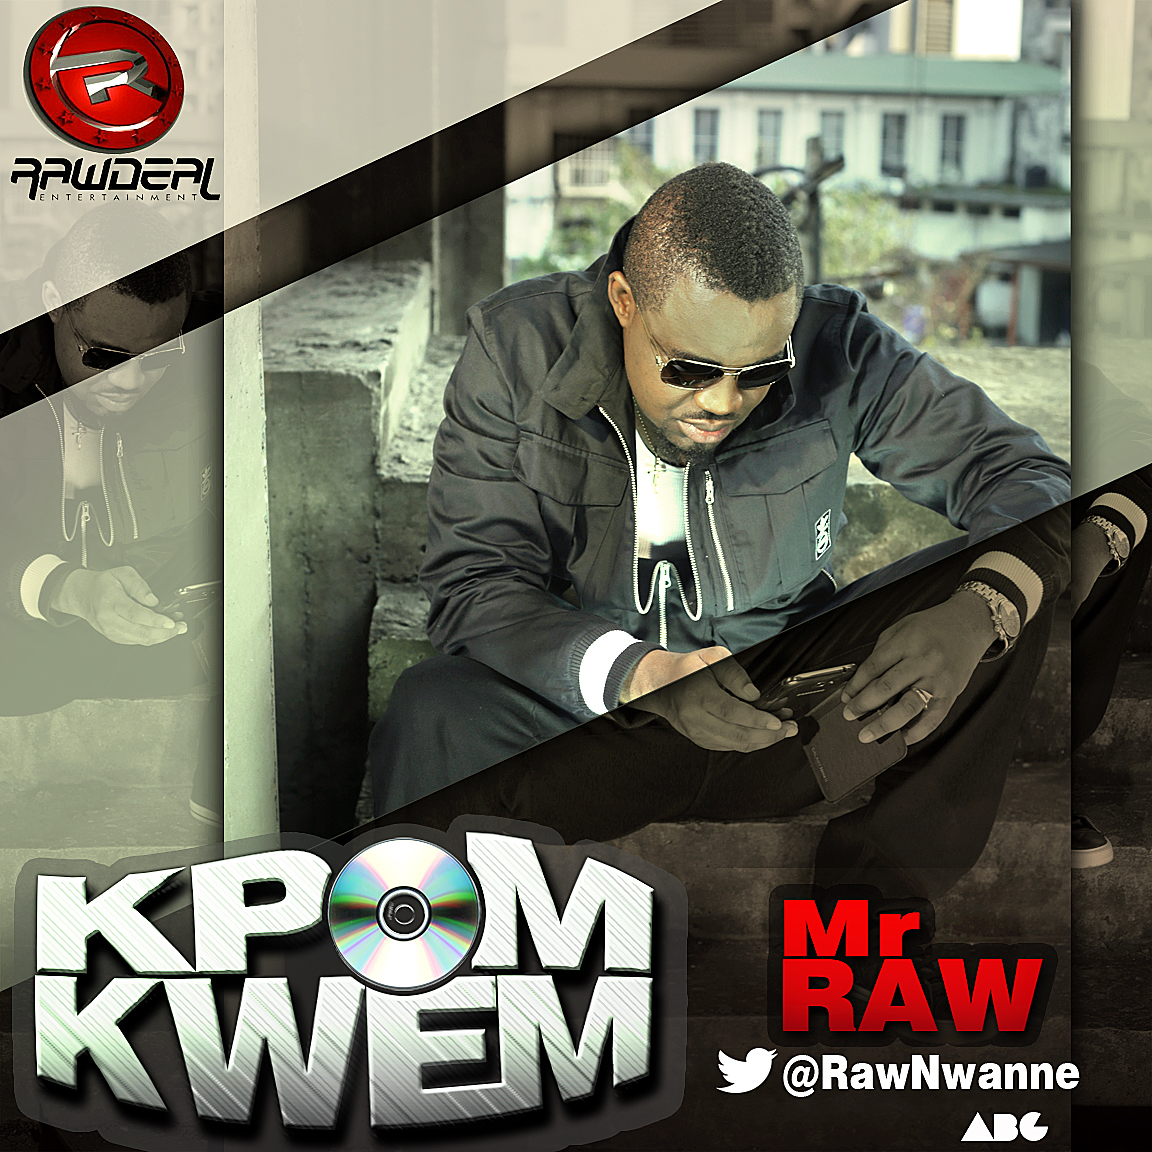 Mr RaW KPOM KWEM3